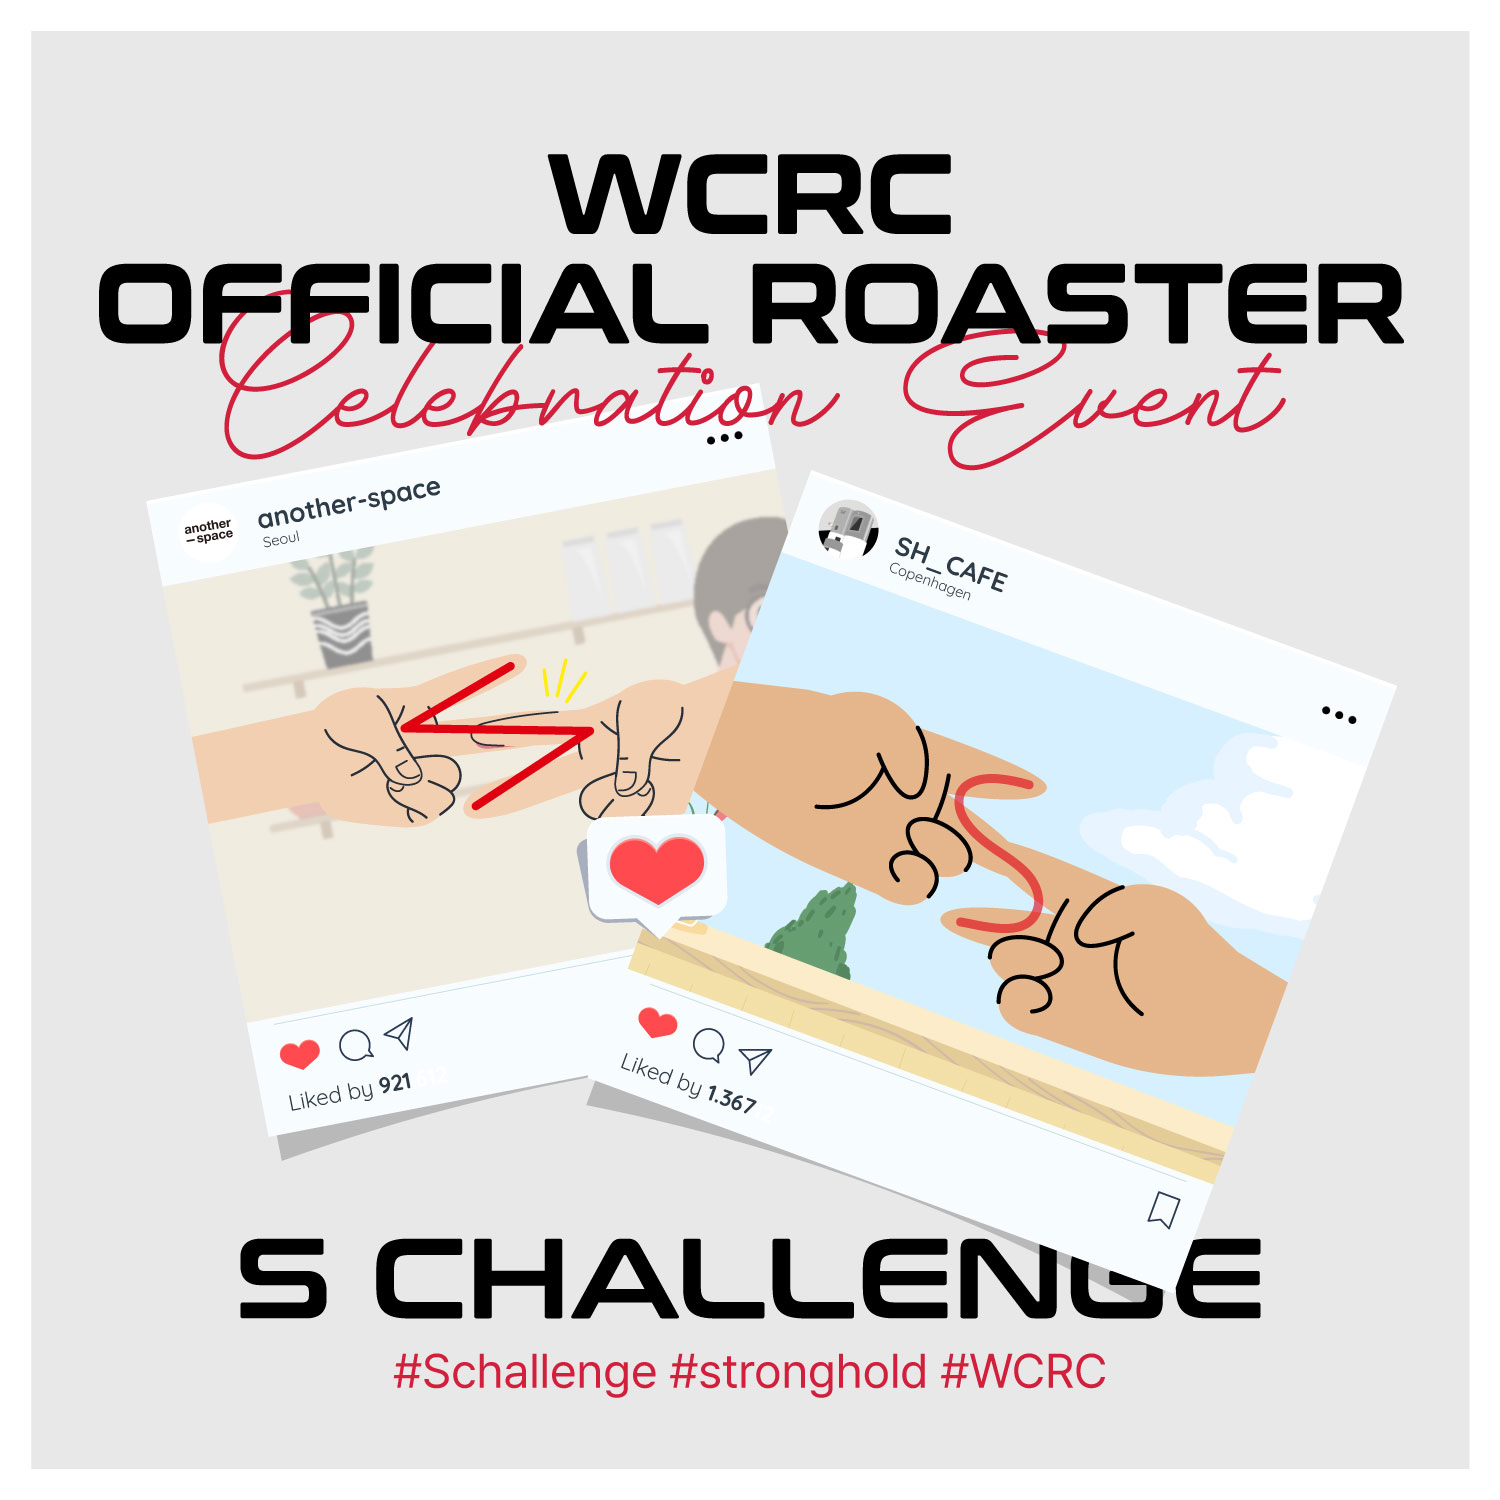 스트롱홀드 WCRC 공식 로스터 기념 'S챌린지' 이벤트